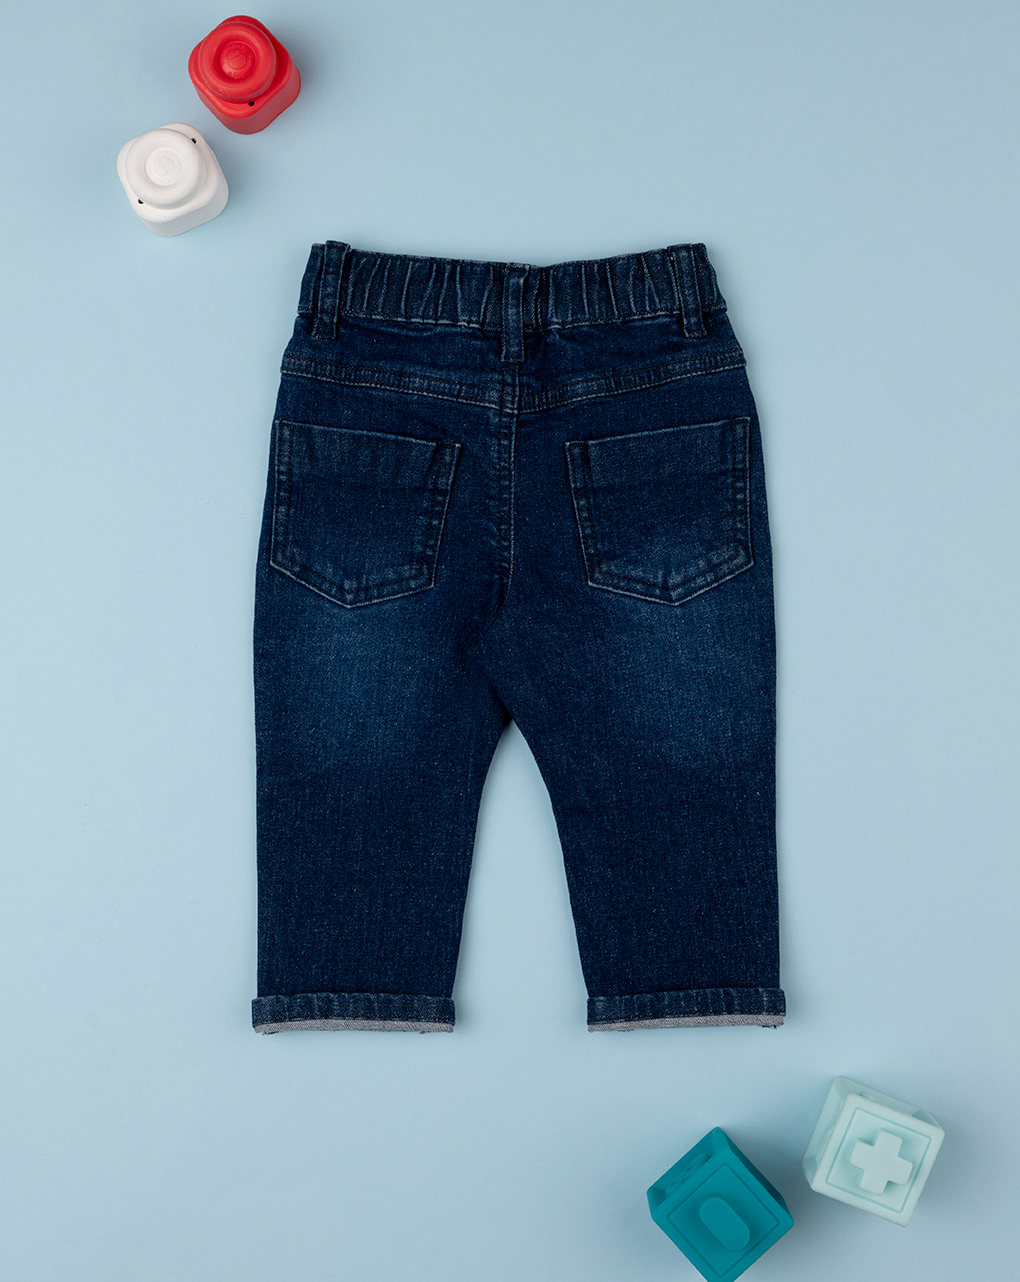 βρεφικό τζιν παντελόνι μπλε για αγόρι - Prénatal